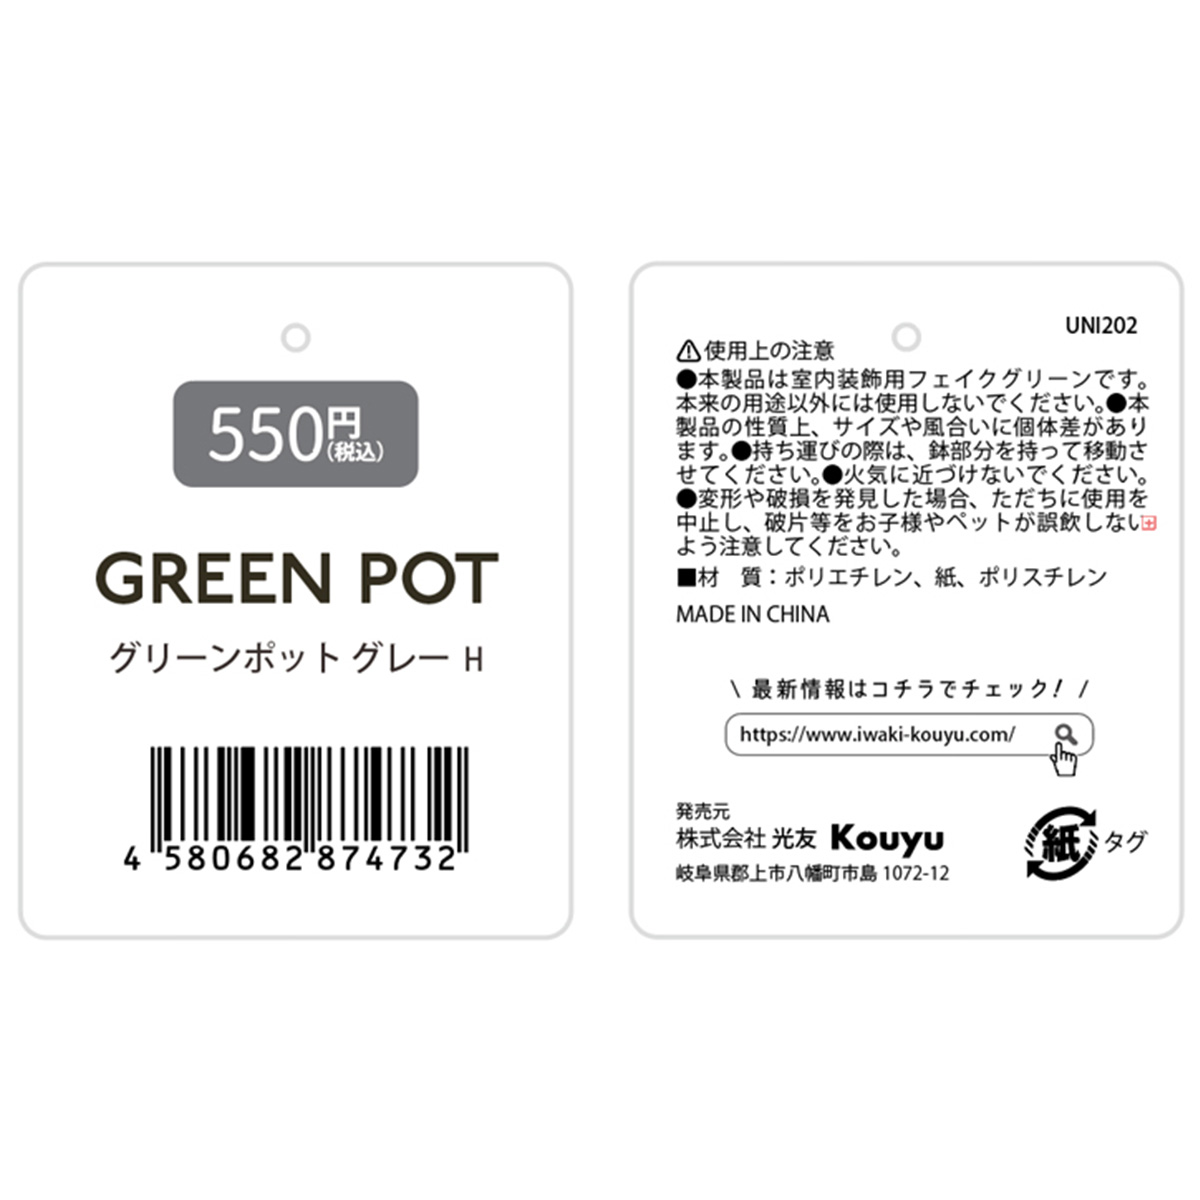  flower pot green pot green pot gray H/ tea. leaf artificial flower fake green 357746